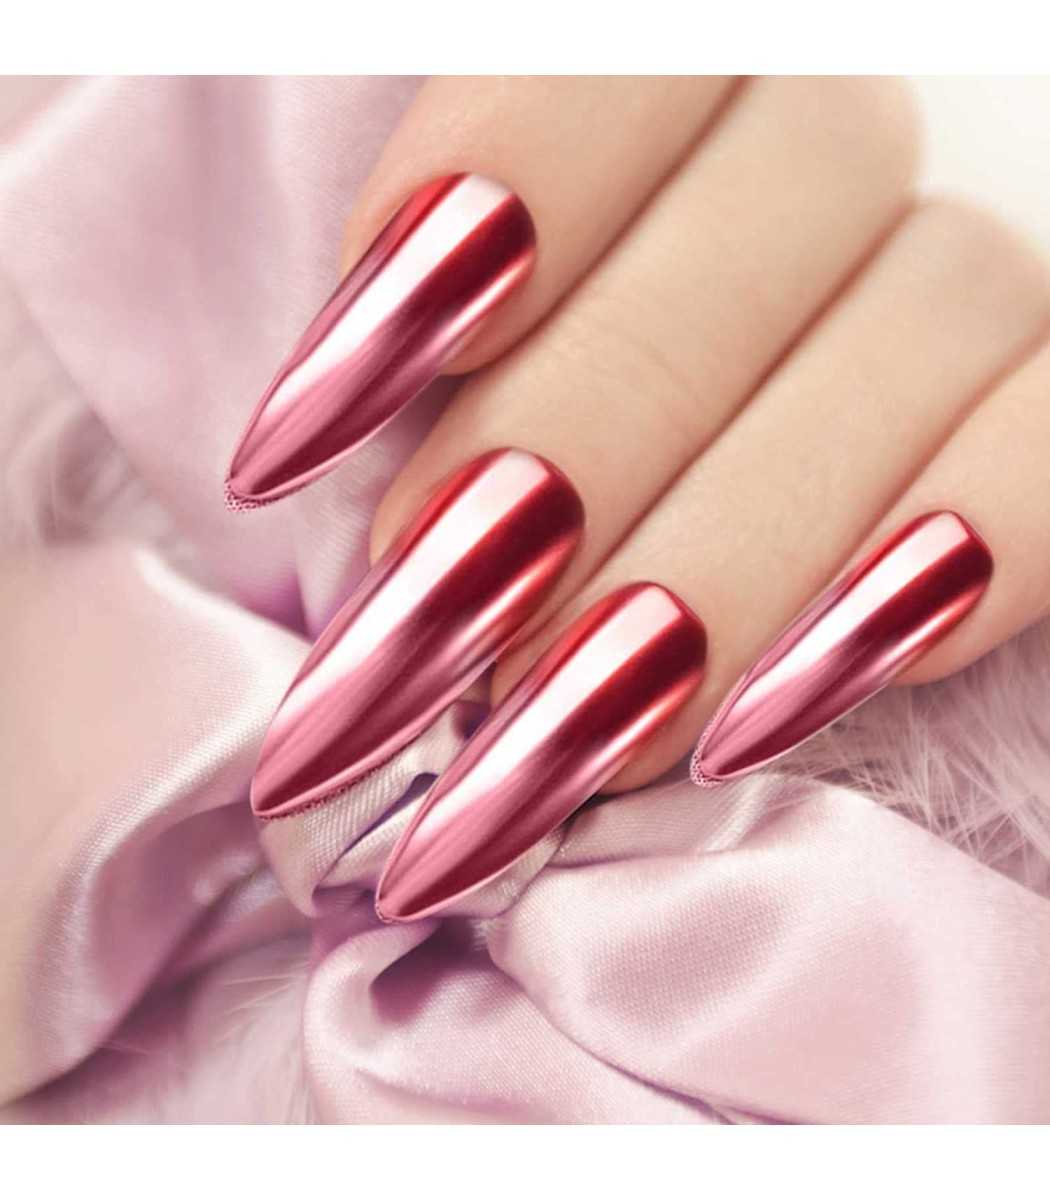 σκόνη καθρέφτη, γιά νύχια nail mirror χρώμα ροζ, κοκκινο